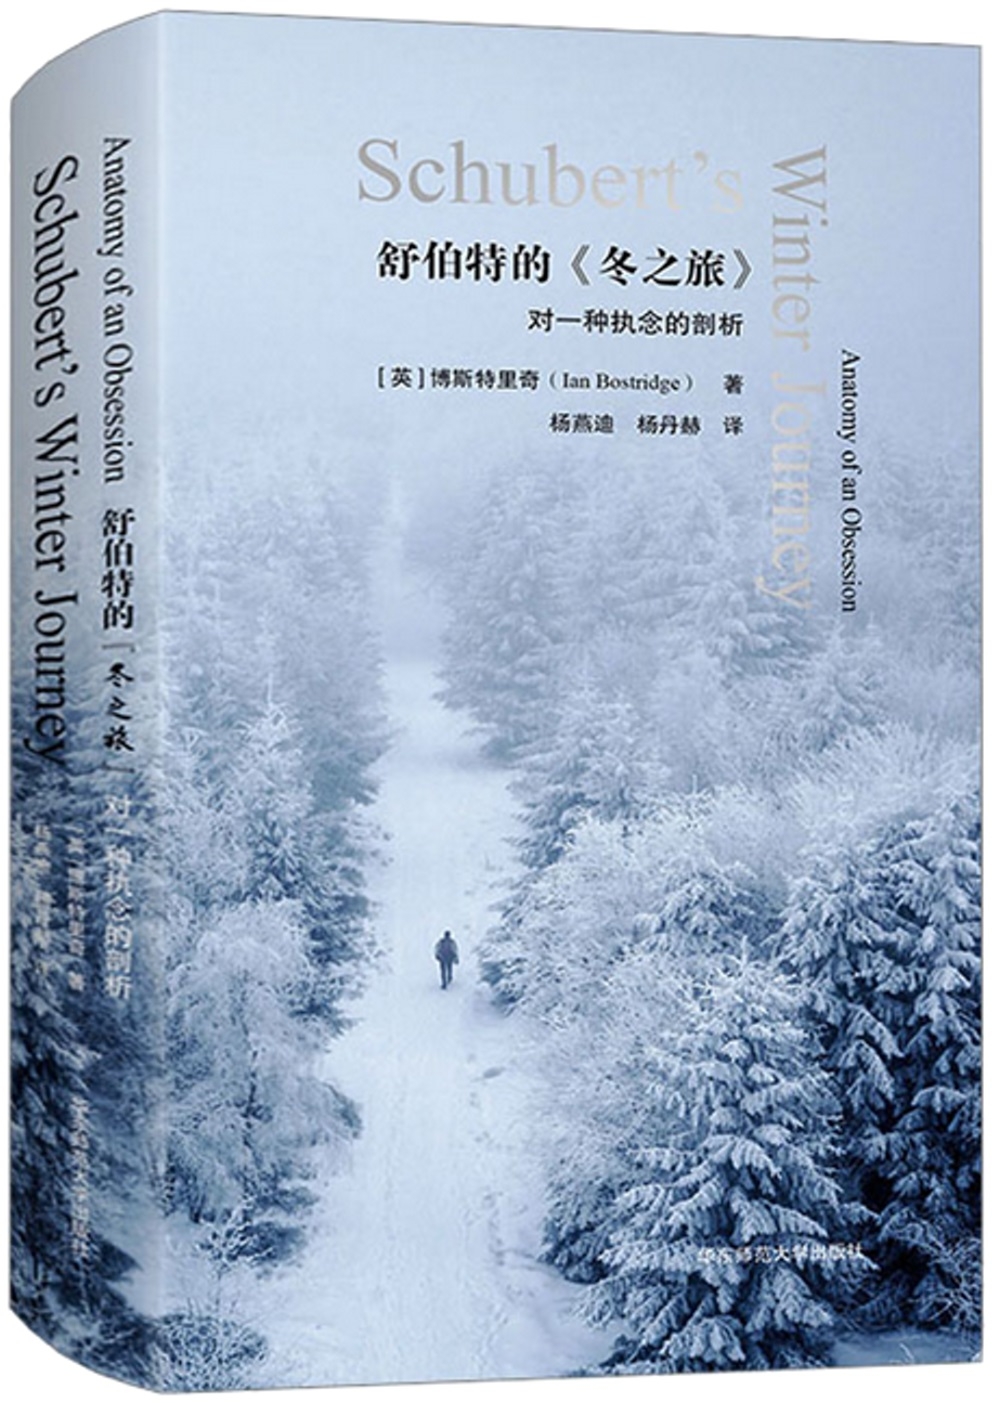 舒伯特的《冬之旅》：對一種執念的剖析